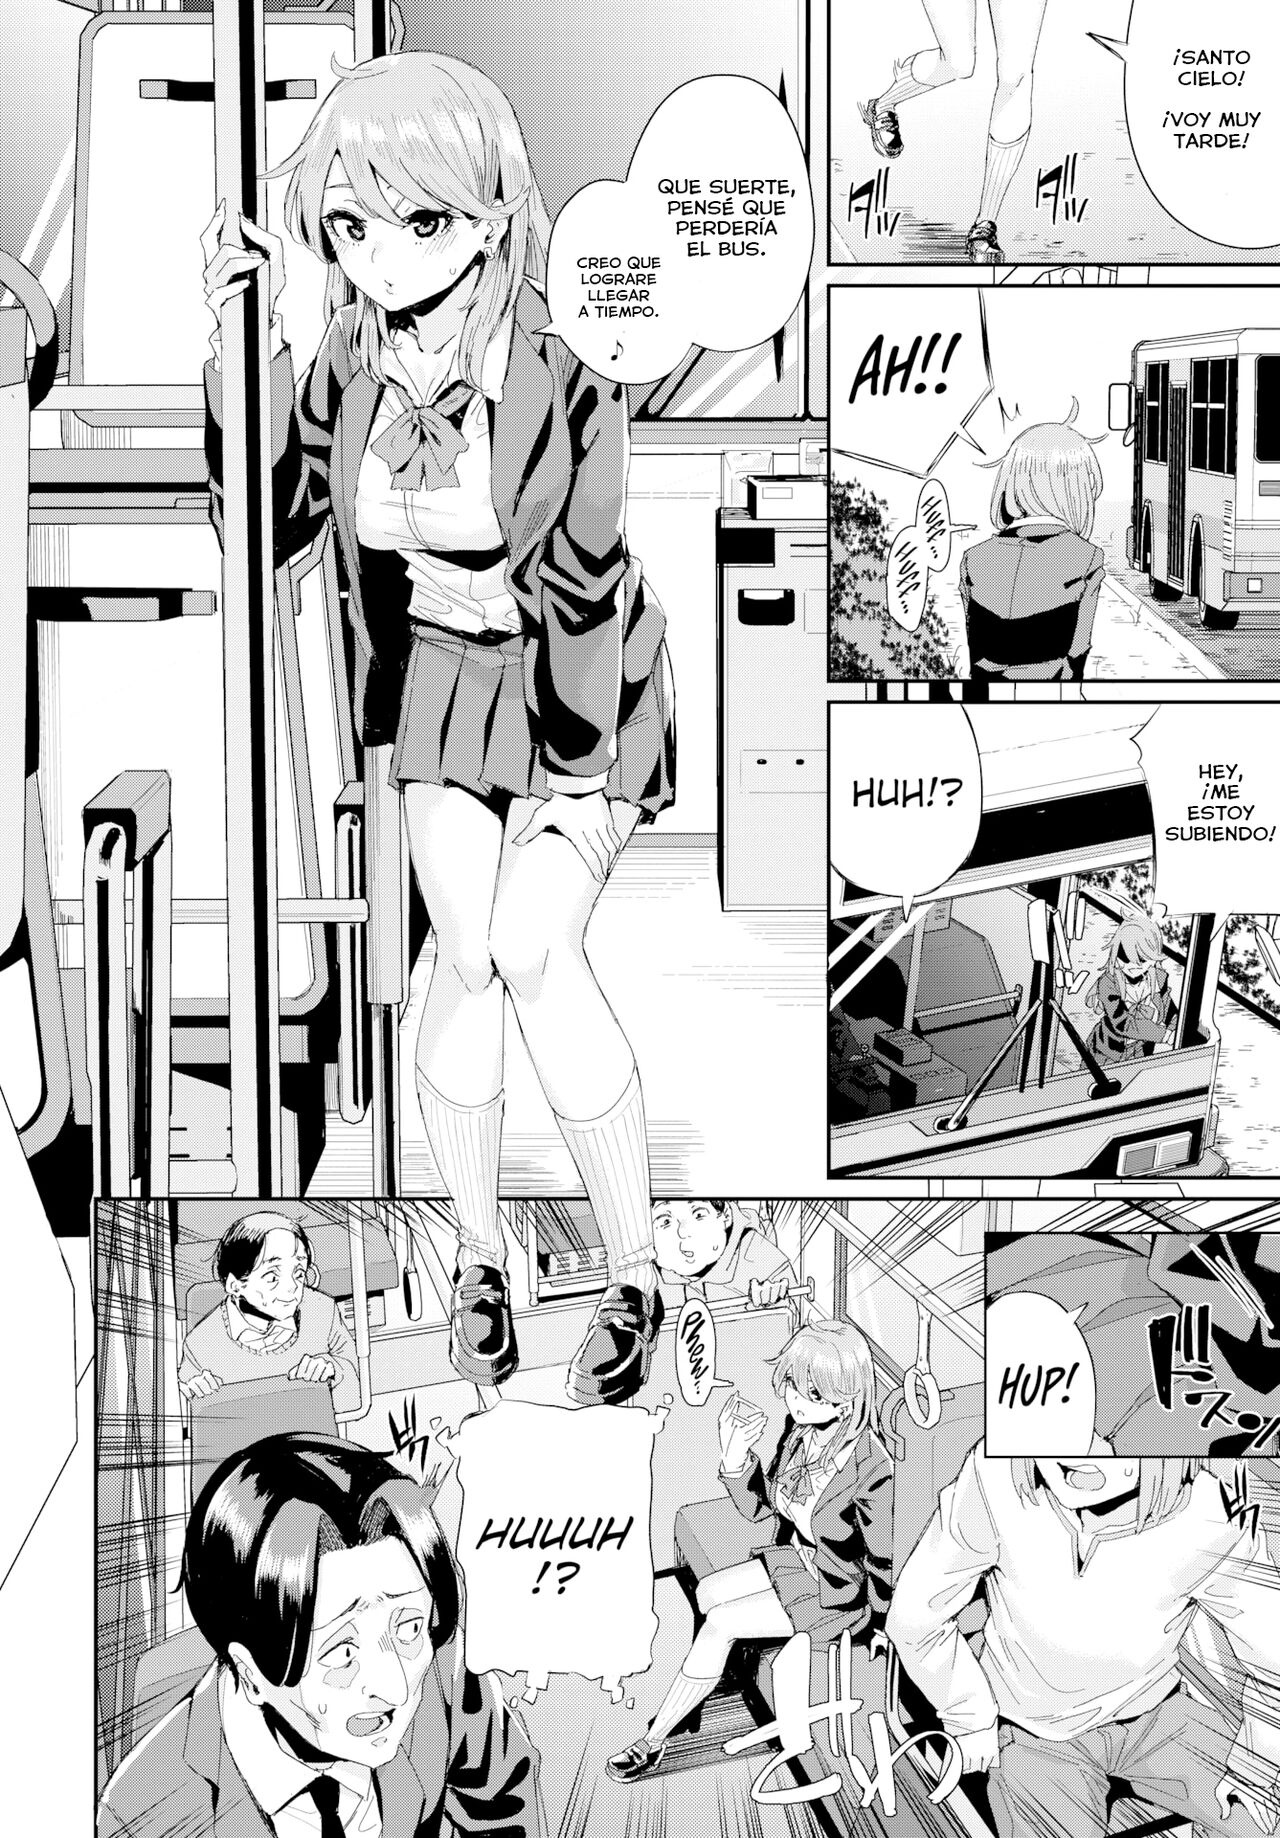 Manga hentai orgia